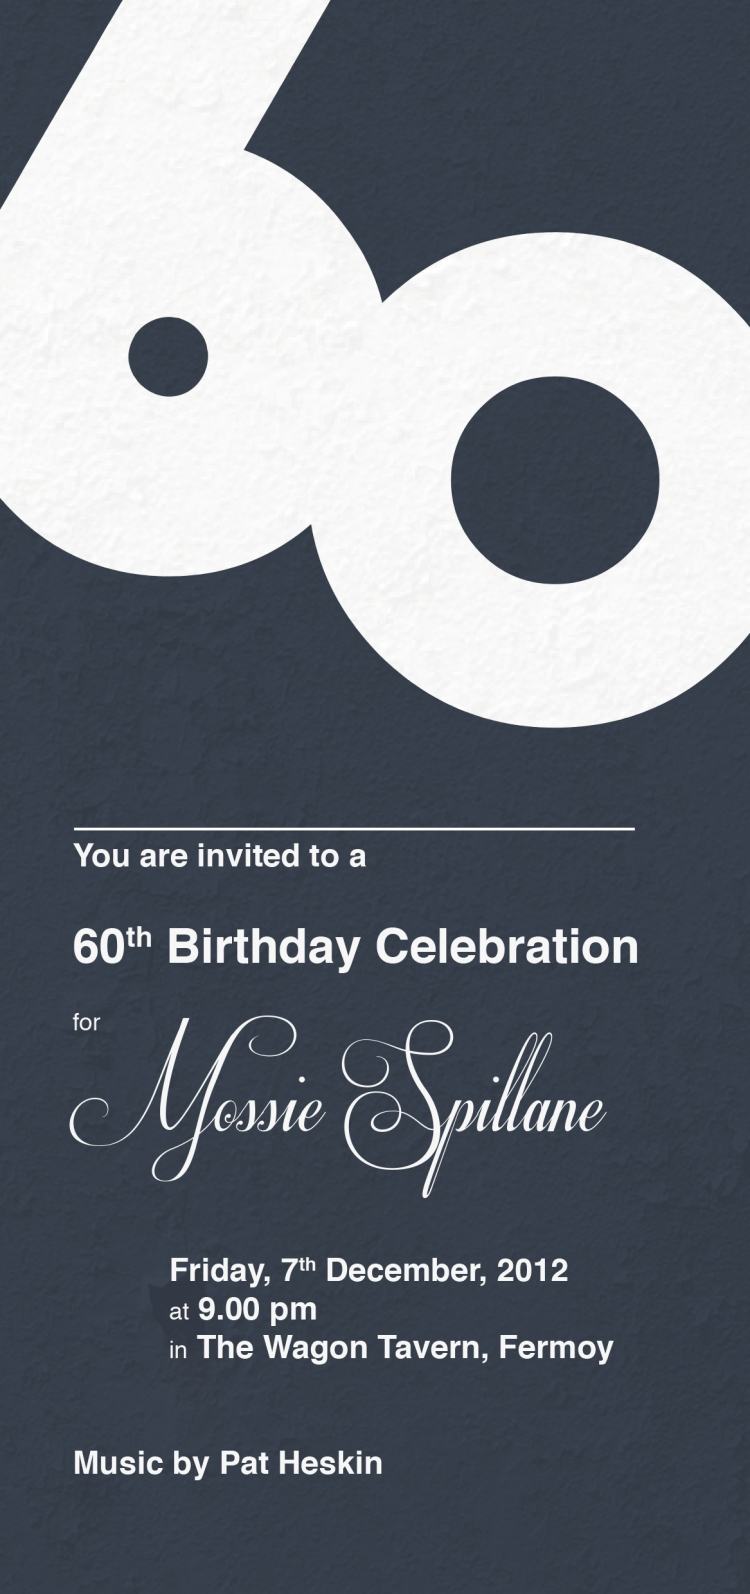 Einladungskarte zum 60. Geburtstag -ideen-schlicht-elegant-design-schwarz-weiss-standort-uhrzeit-text